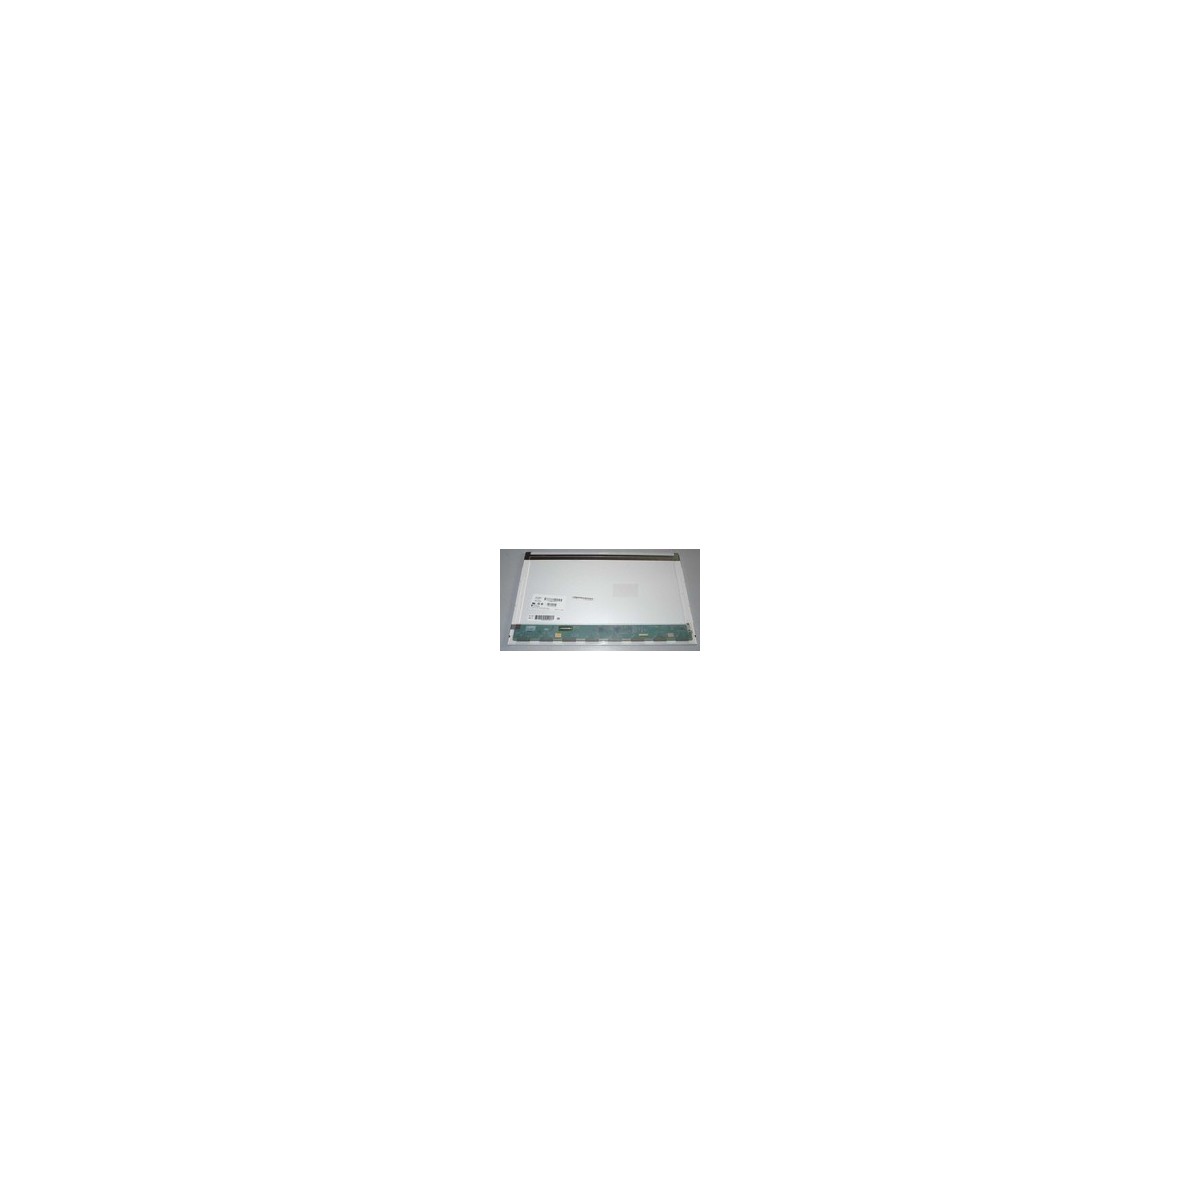 CoreParts MSC156F40-093M - Display - 39.6 cm (15.6) - Full HD